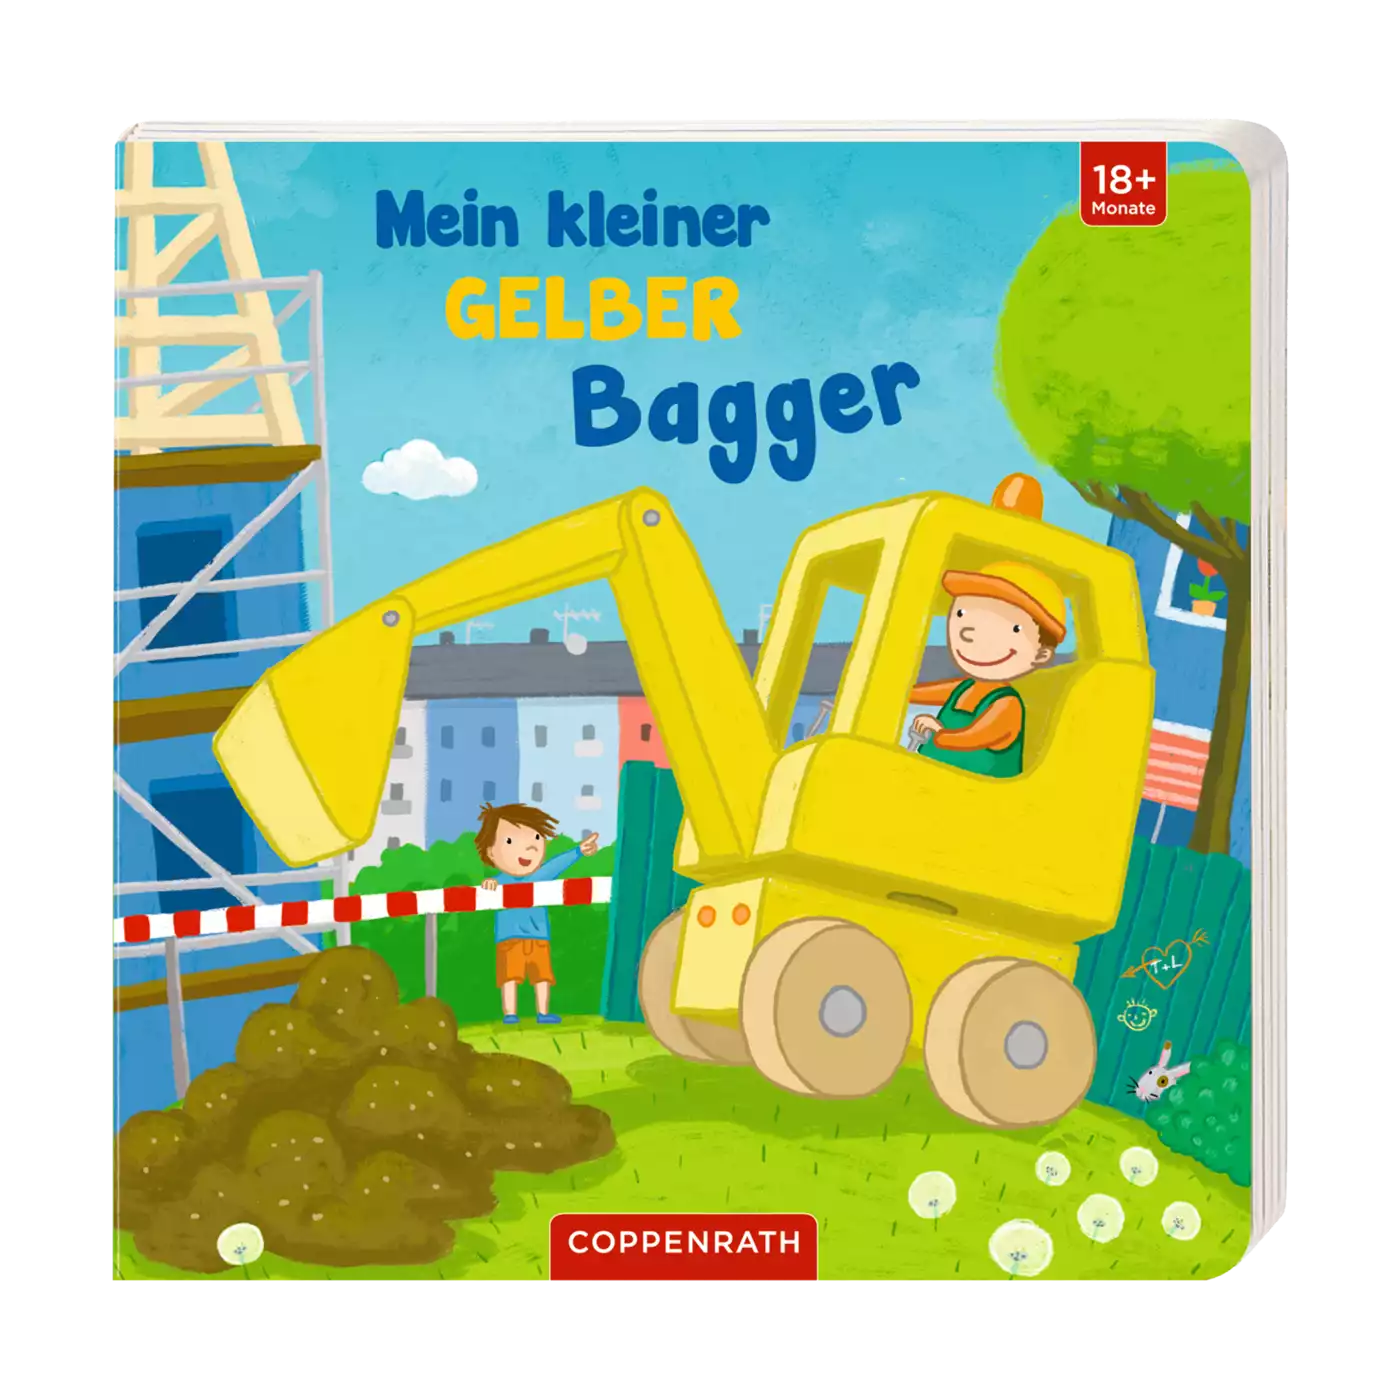 Mein kleiner gelber Bagger DIE SPIEGELBURG 2000565362108 1